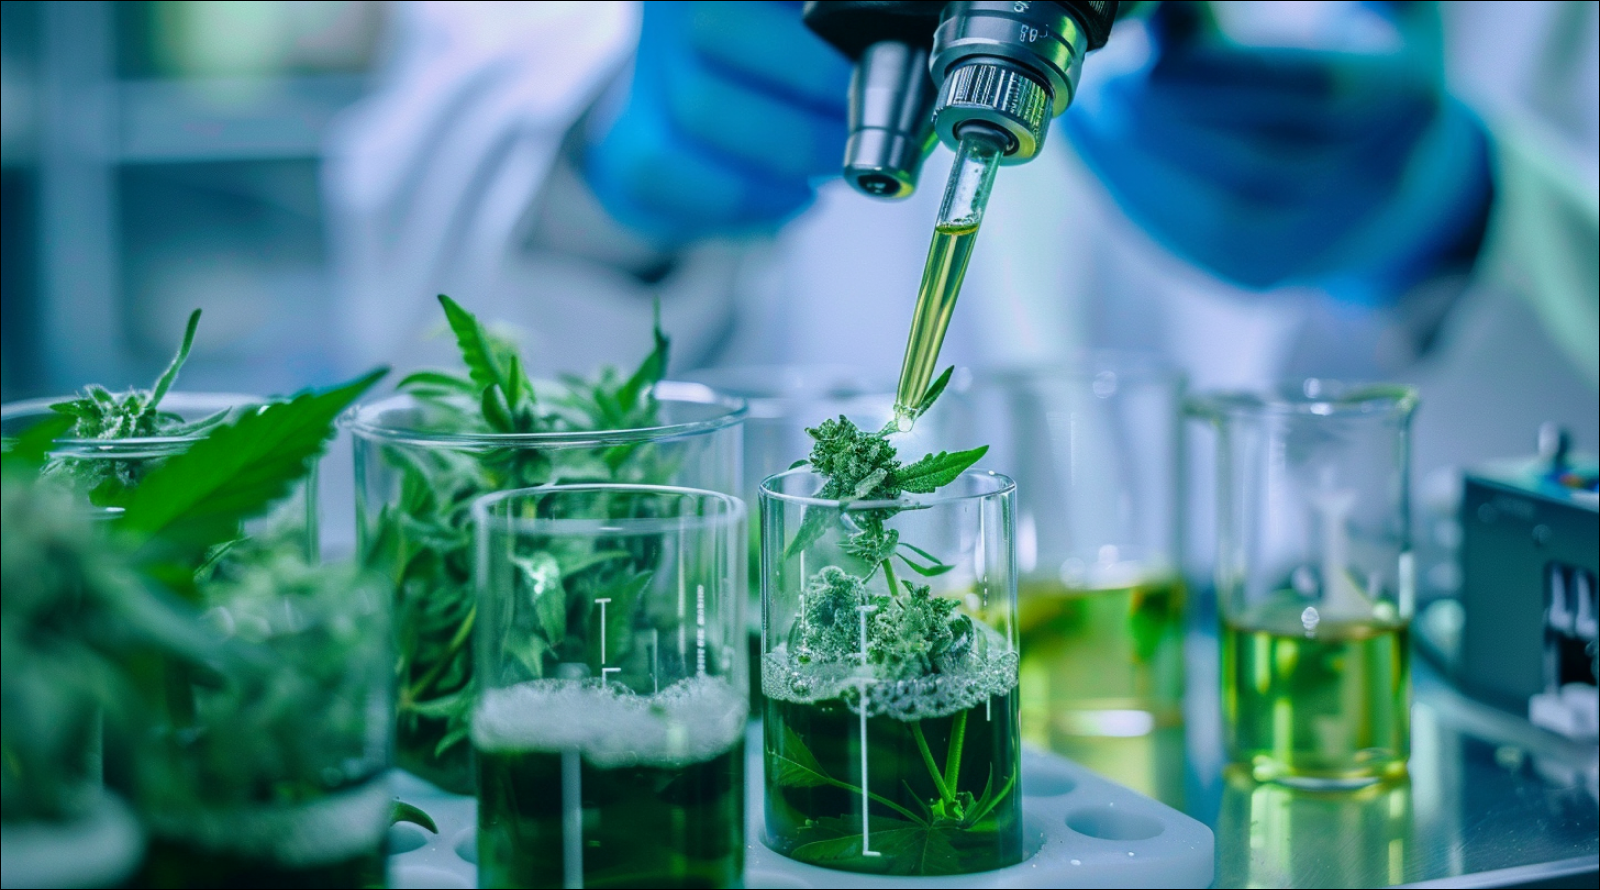 Cannabisproben in Bechern zur Untersuchung im Labor